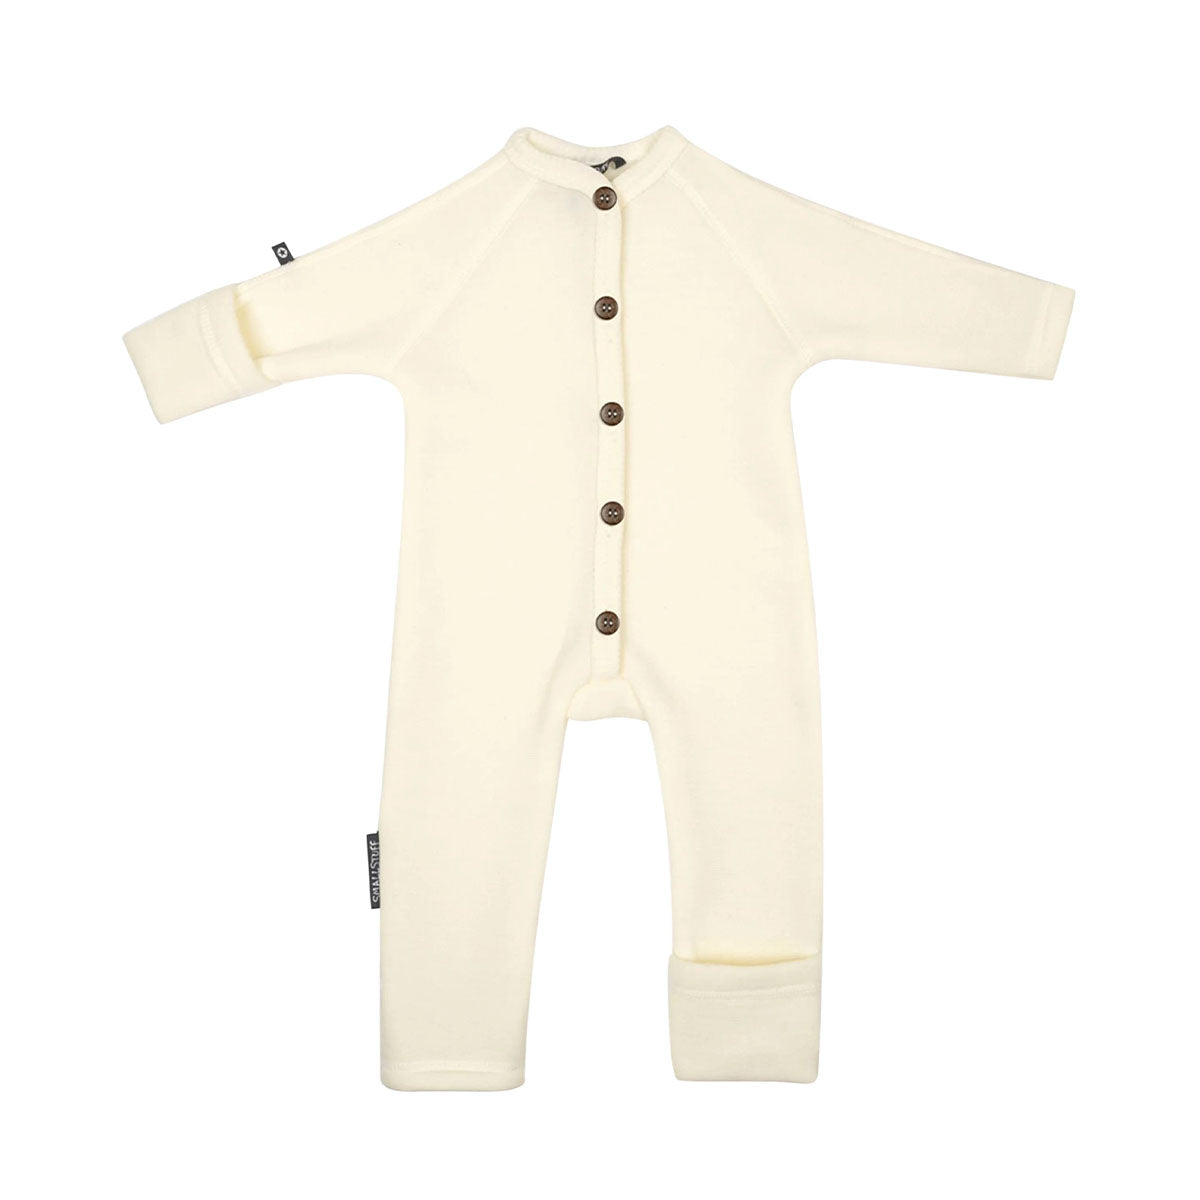 Deze heerlijke Smallstuff jumpsuit off white met knoopjes van merinowol is een must have voor iedere baby! De jumpsuit is heerlijk zacht en zal heerlijk comfortabel zijn voor jouw kleine spruit. De jumpsuit is gemaakt van 100% merinowol. VanZus